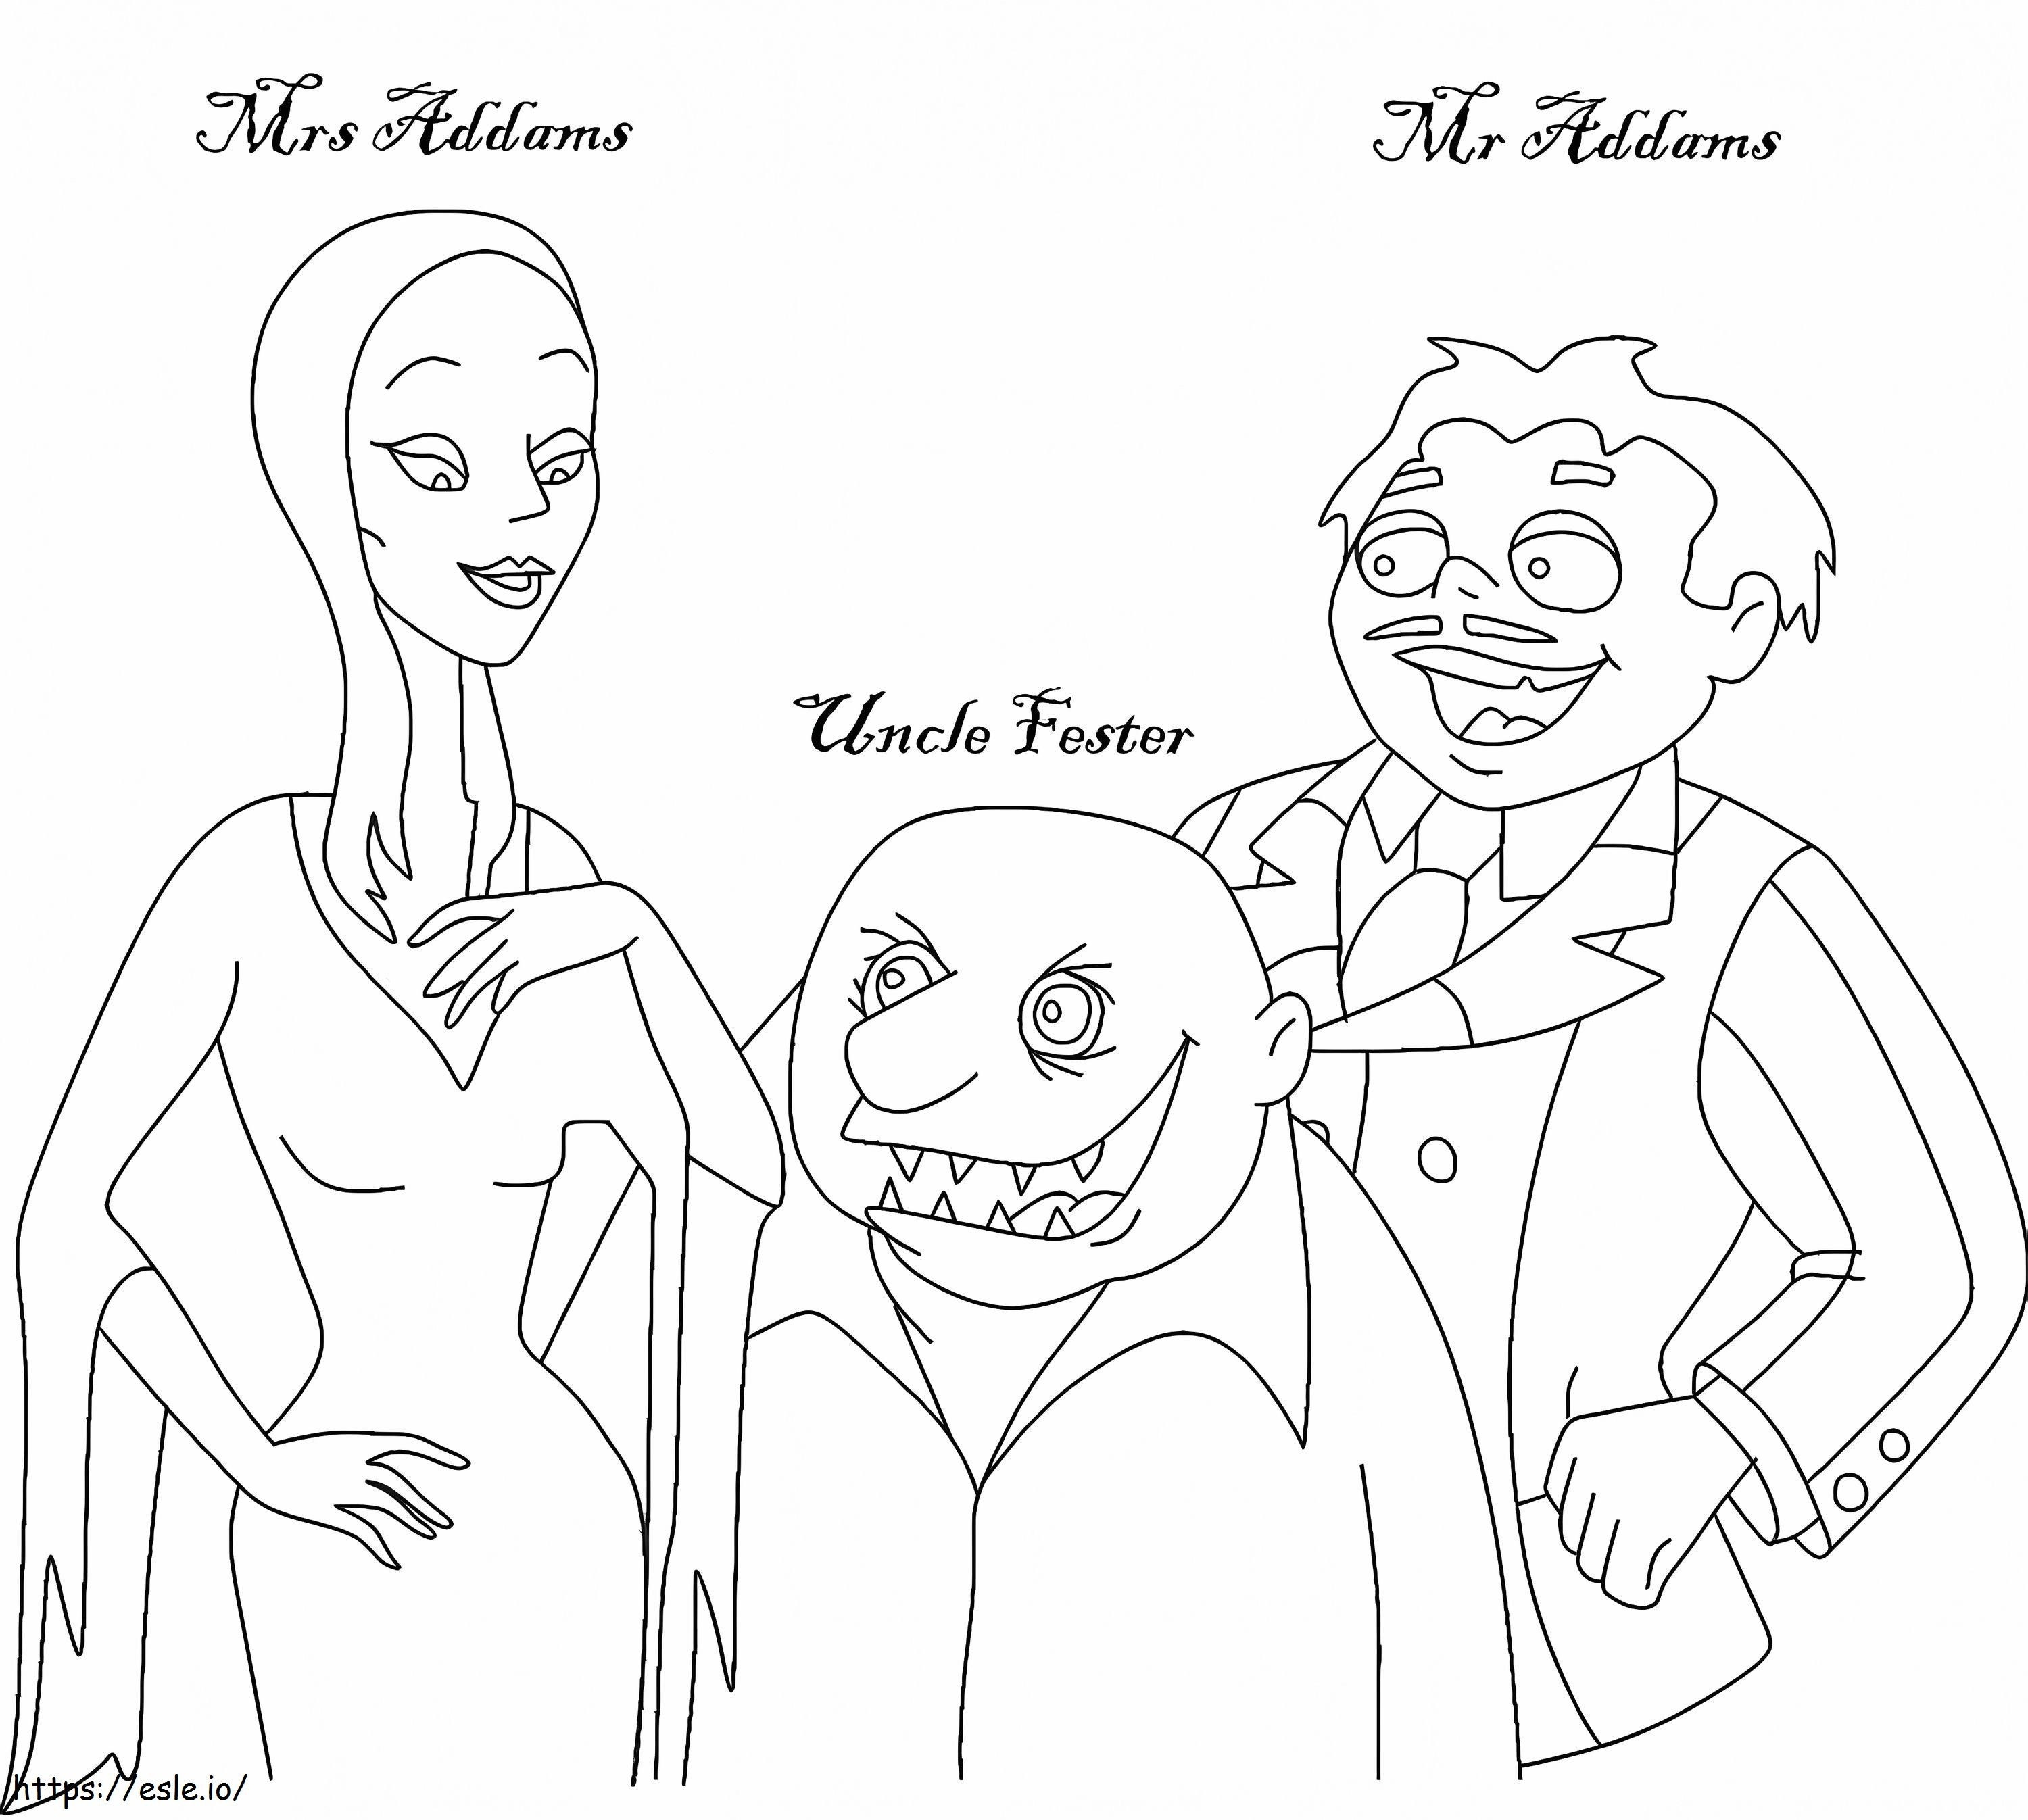 Grátis A Família Addams para imprimir para colorir